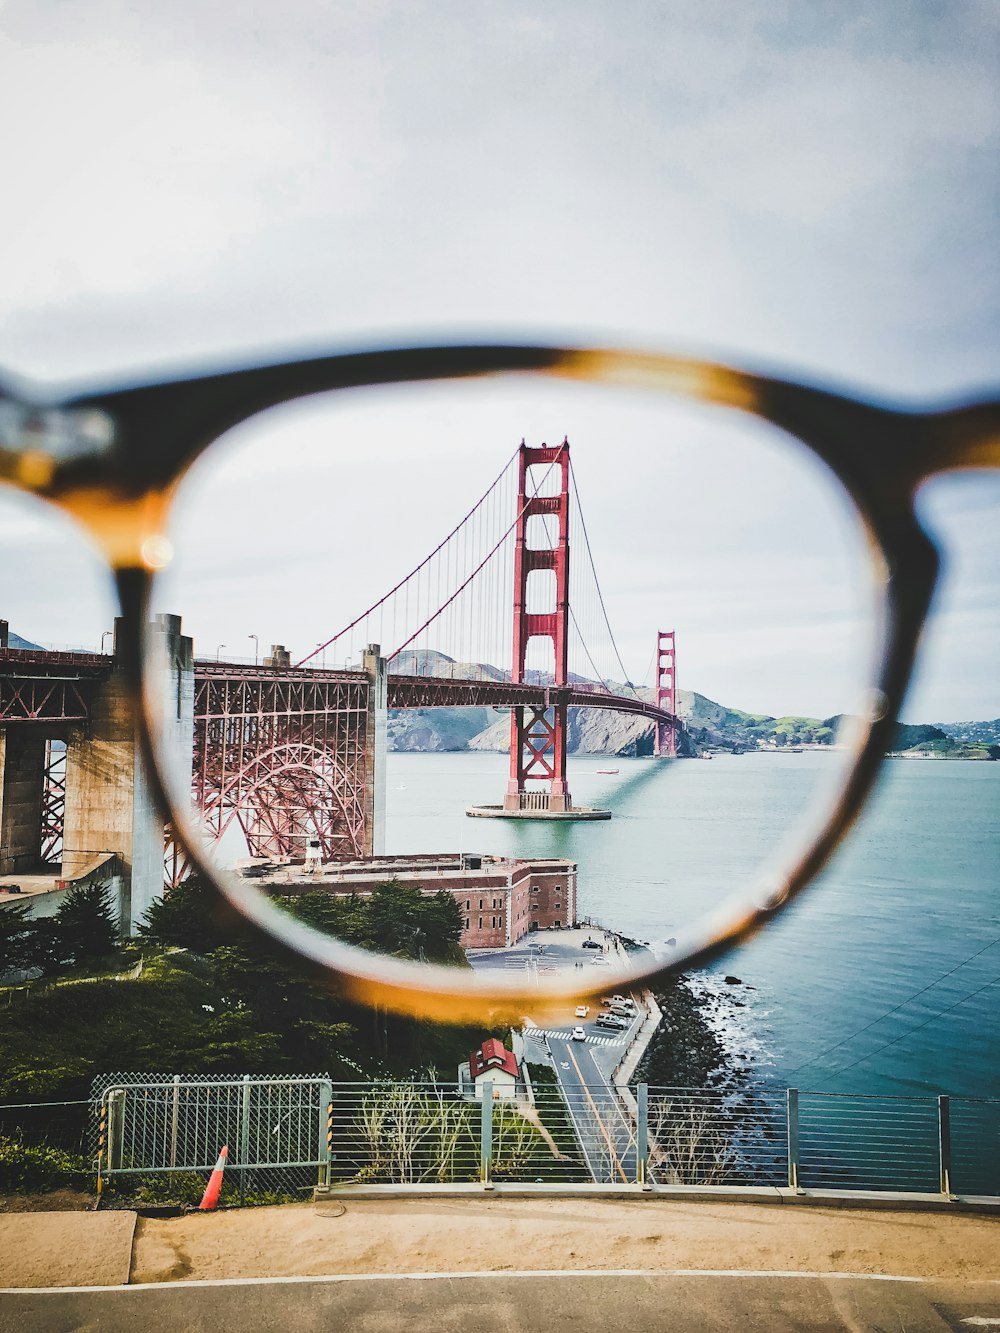 Objektivfotografie der Golden Gate Bridge, San Francisco, Kalifornien bei Tag